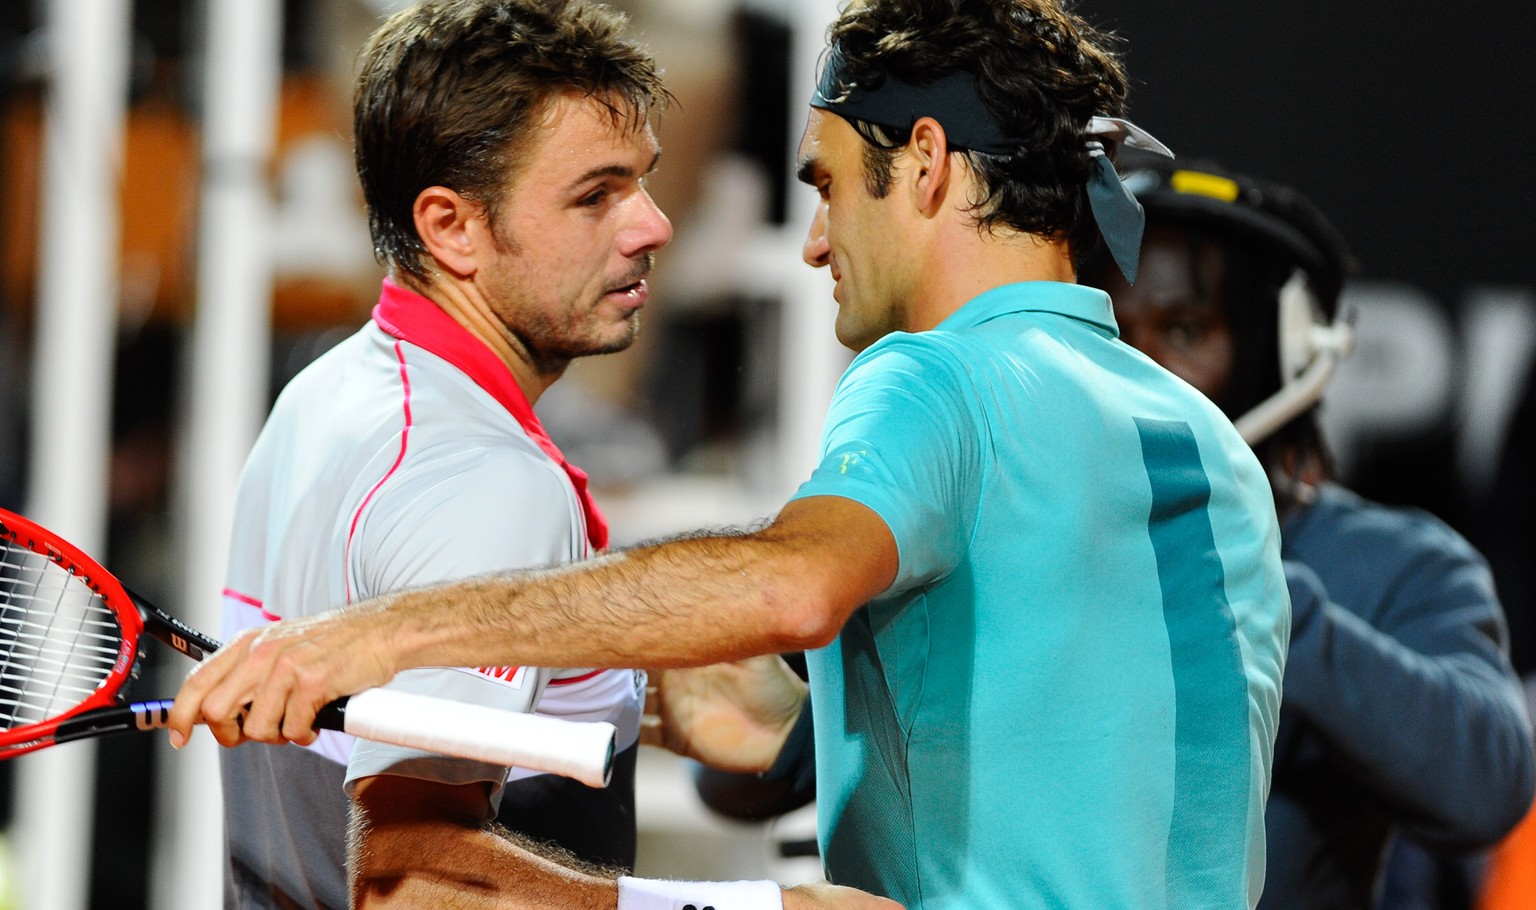 Wenn beide durchkommen, treffen Federer und Wawinka im US-Open-Halbfinal aufeinander.